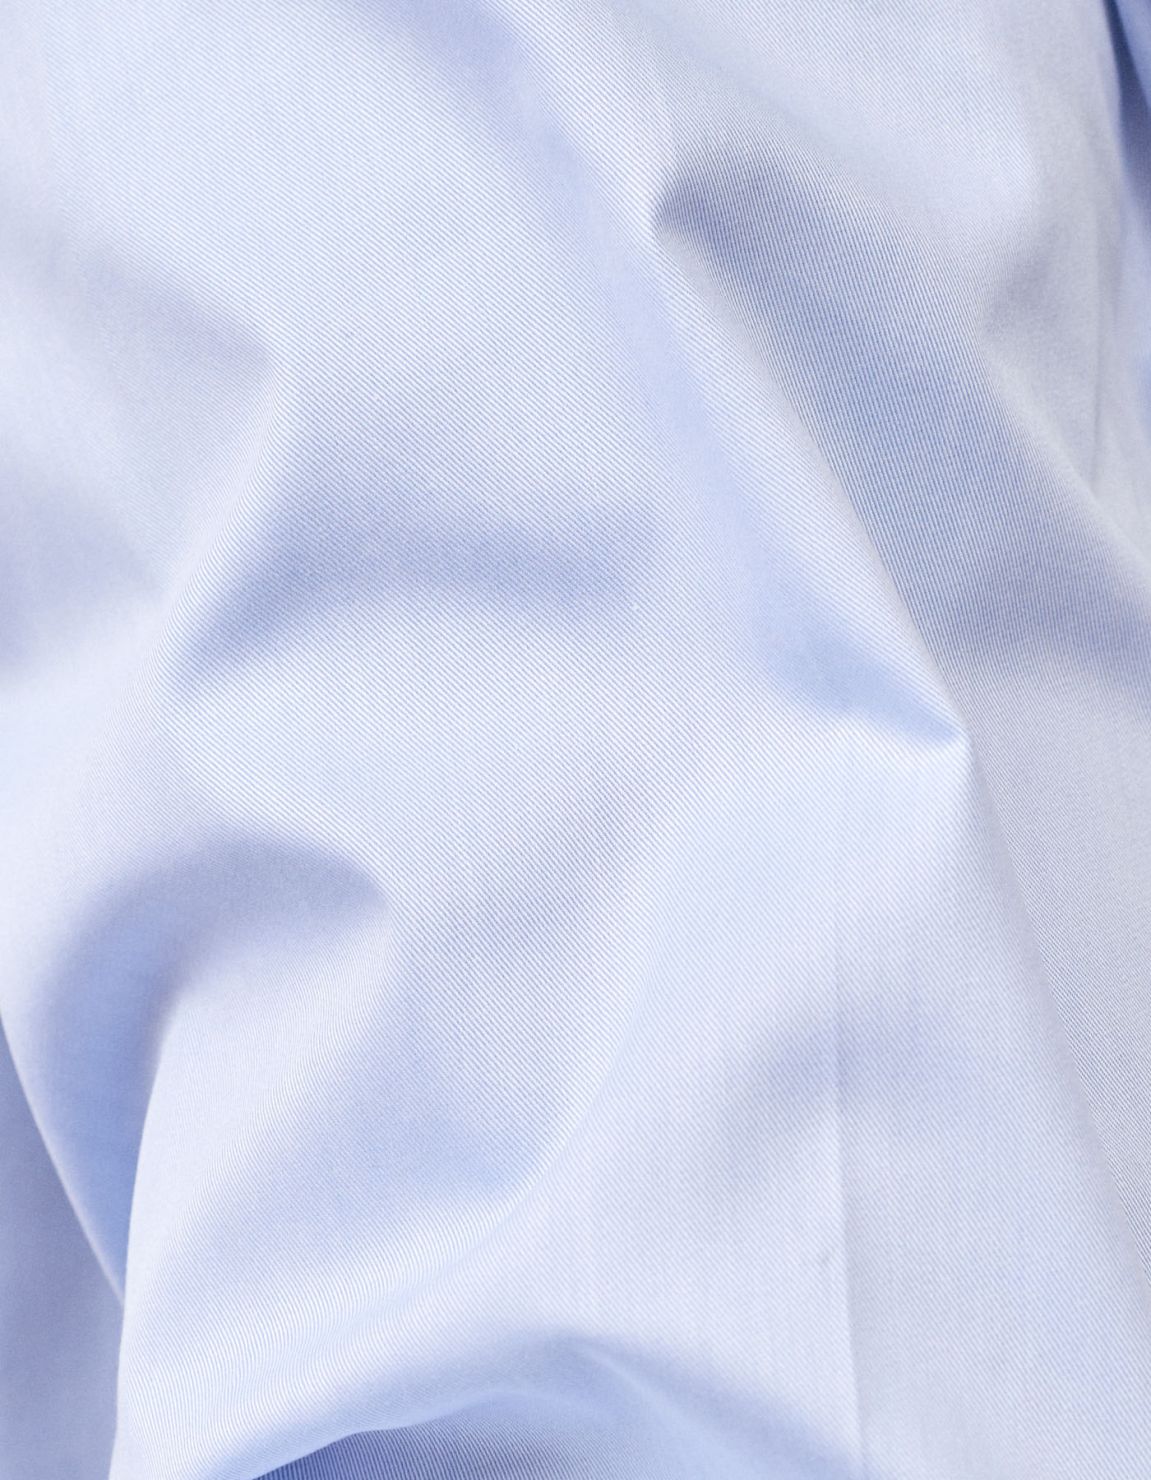 Shirt Collar small cutaway Light Blue Twill Evolution Classic Fit 2